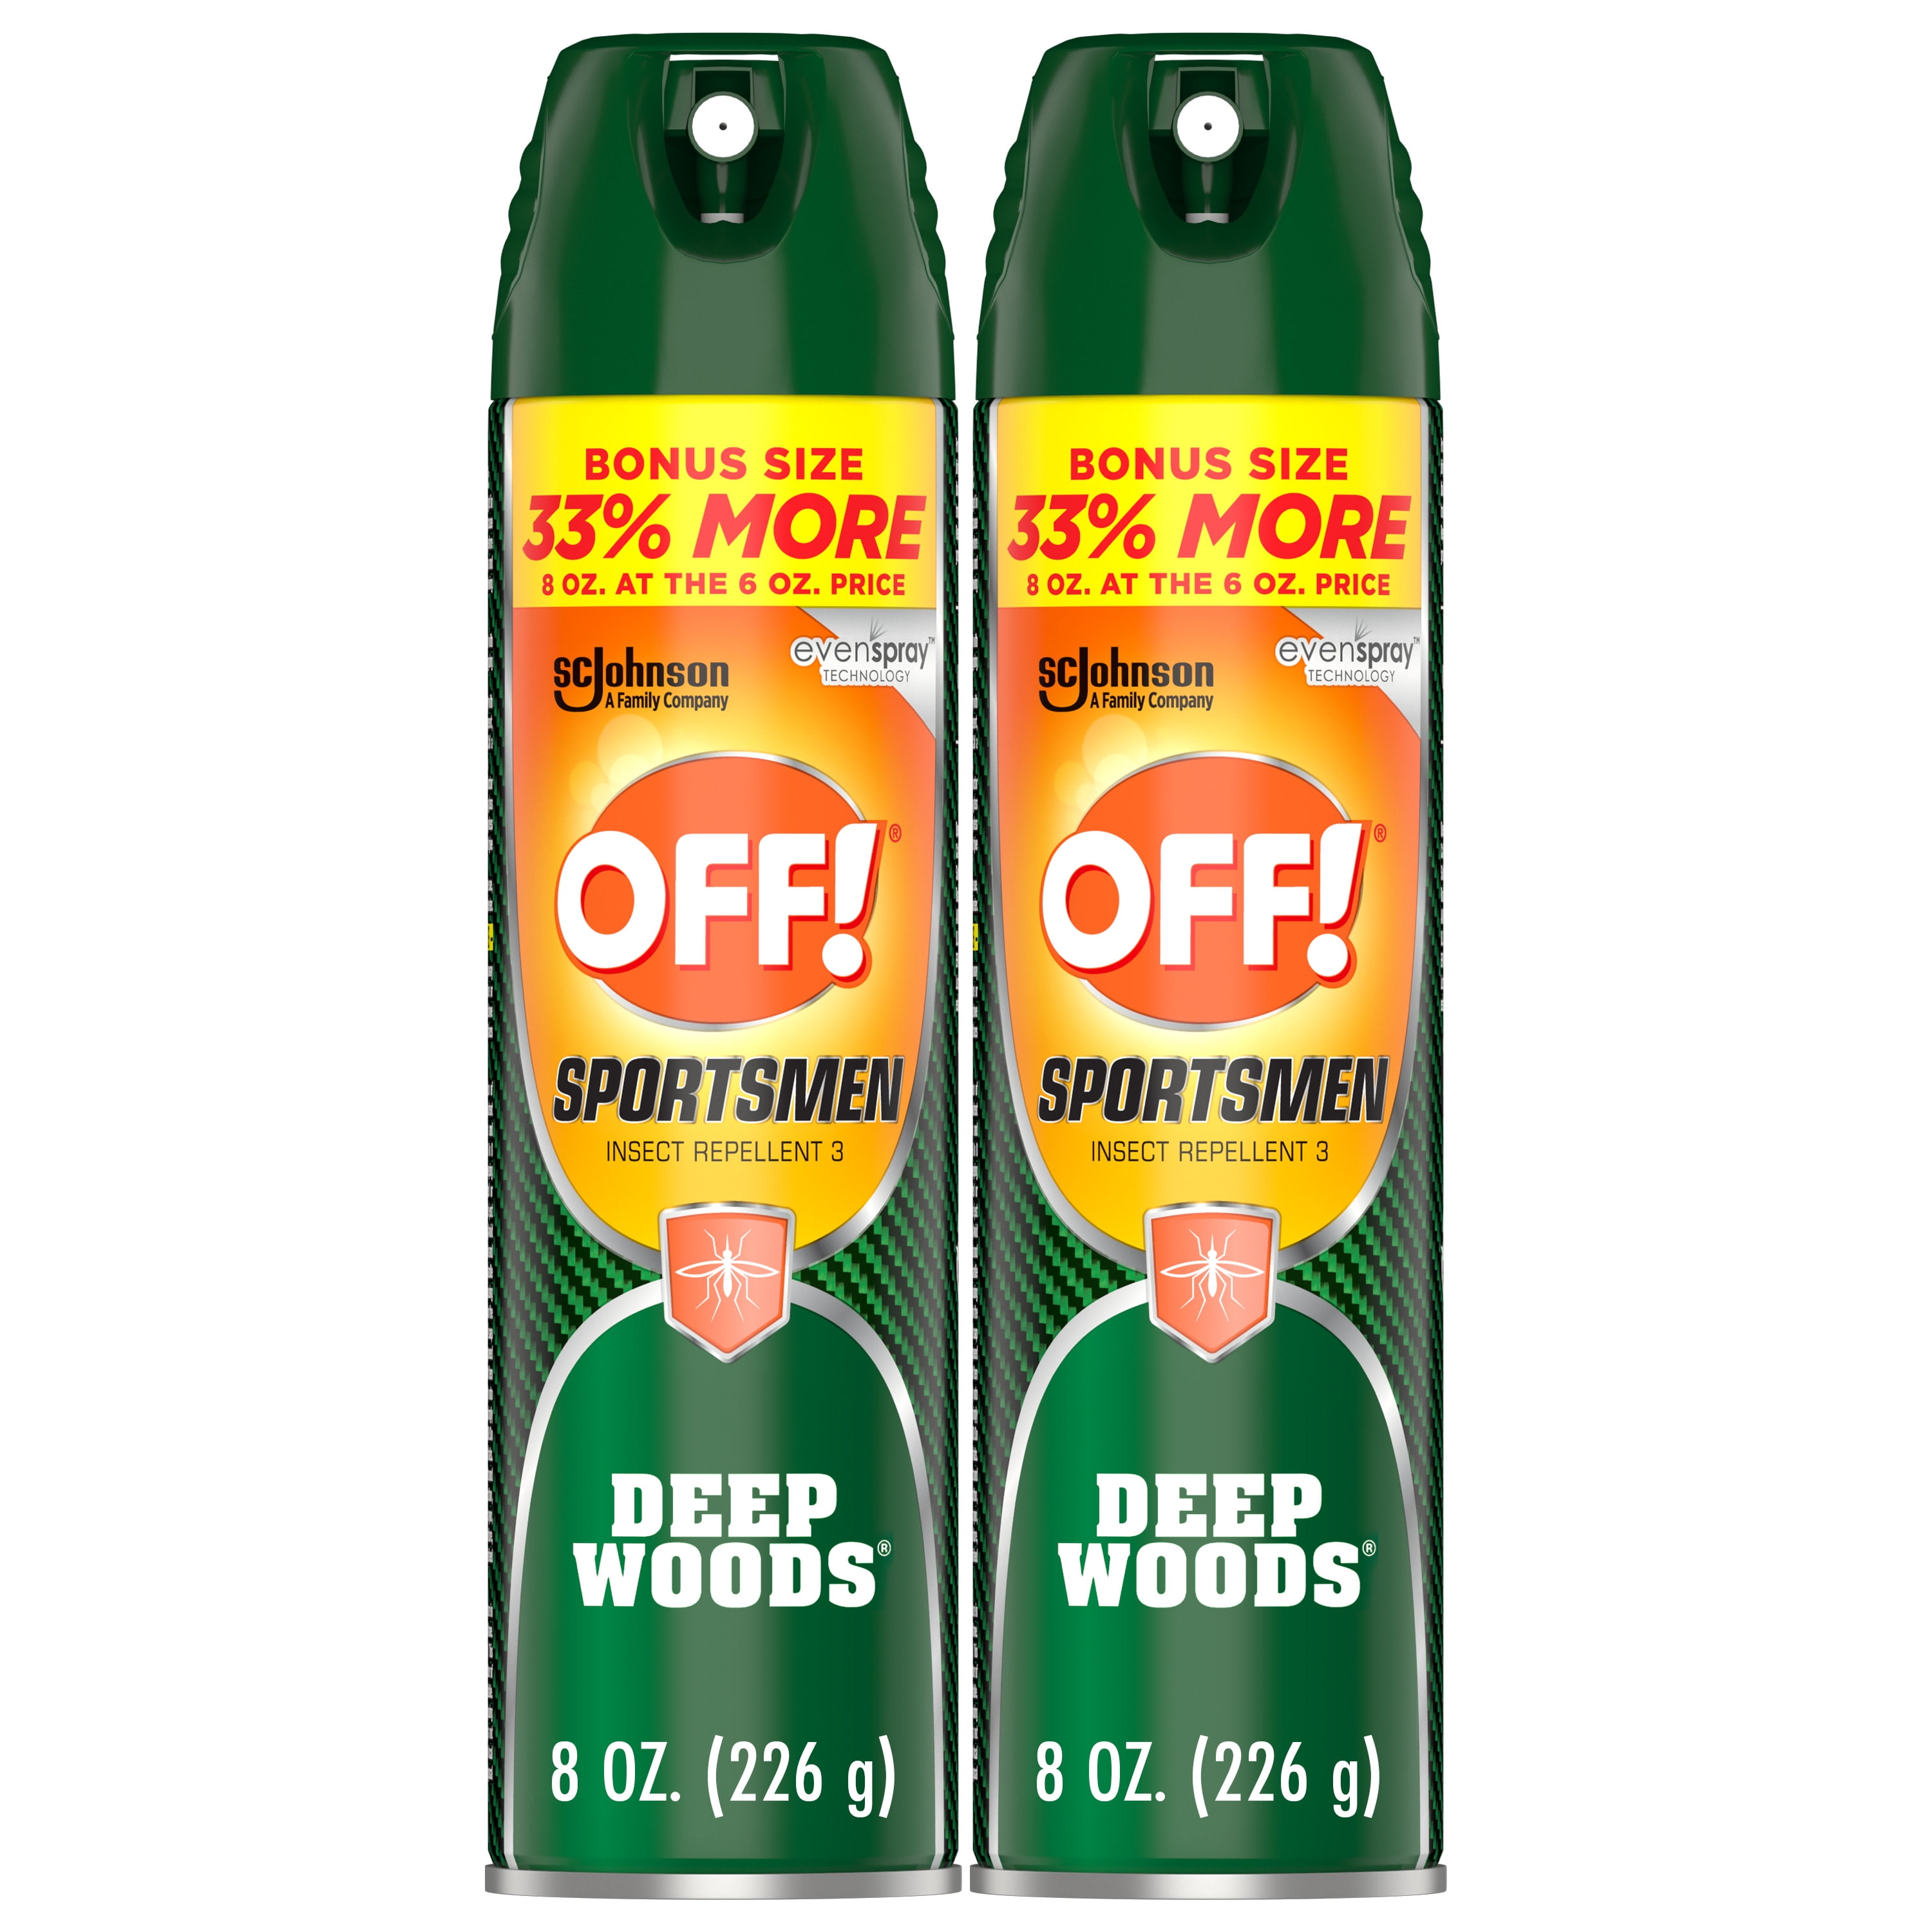 OFF! Sportsmen Deep Woods Insect Repellent III, 8 Oz, 2 Pack